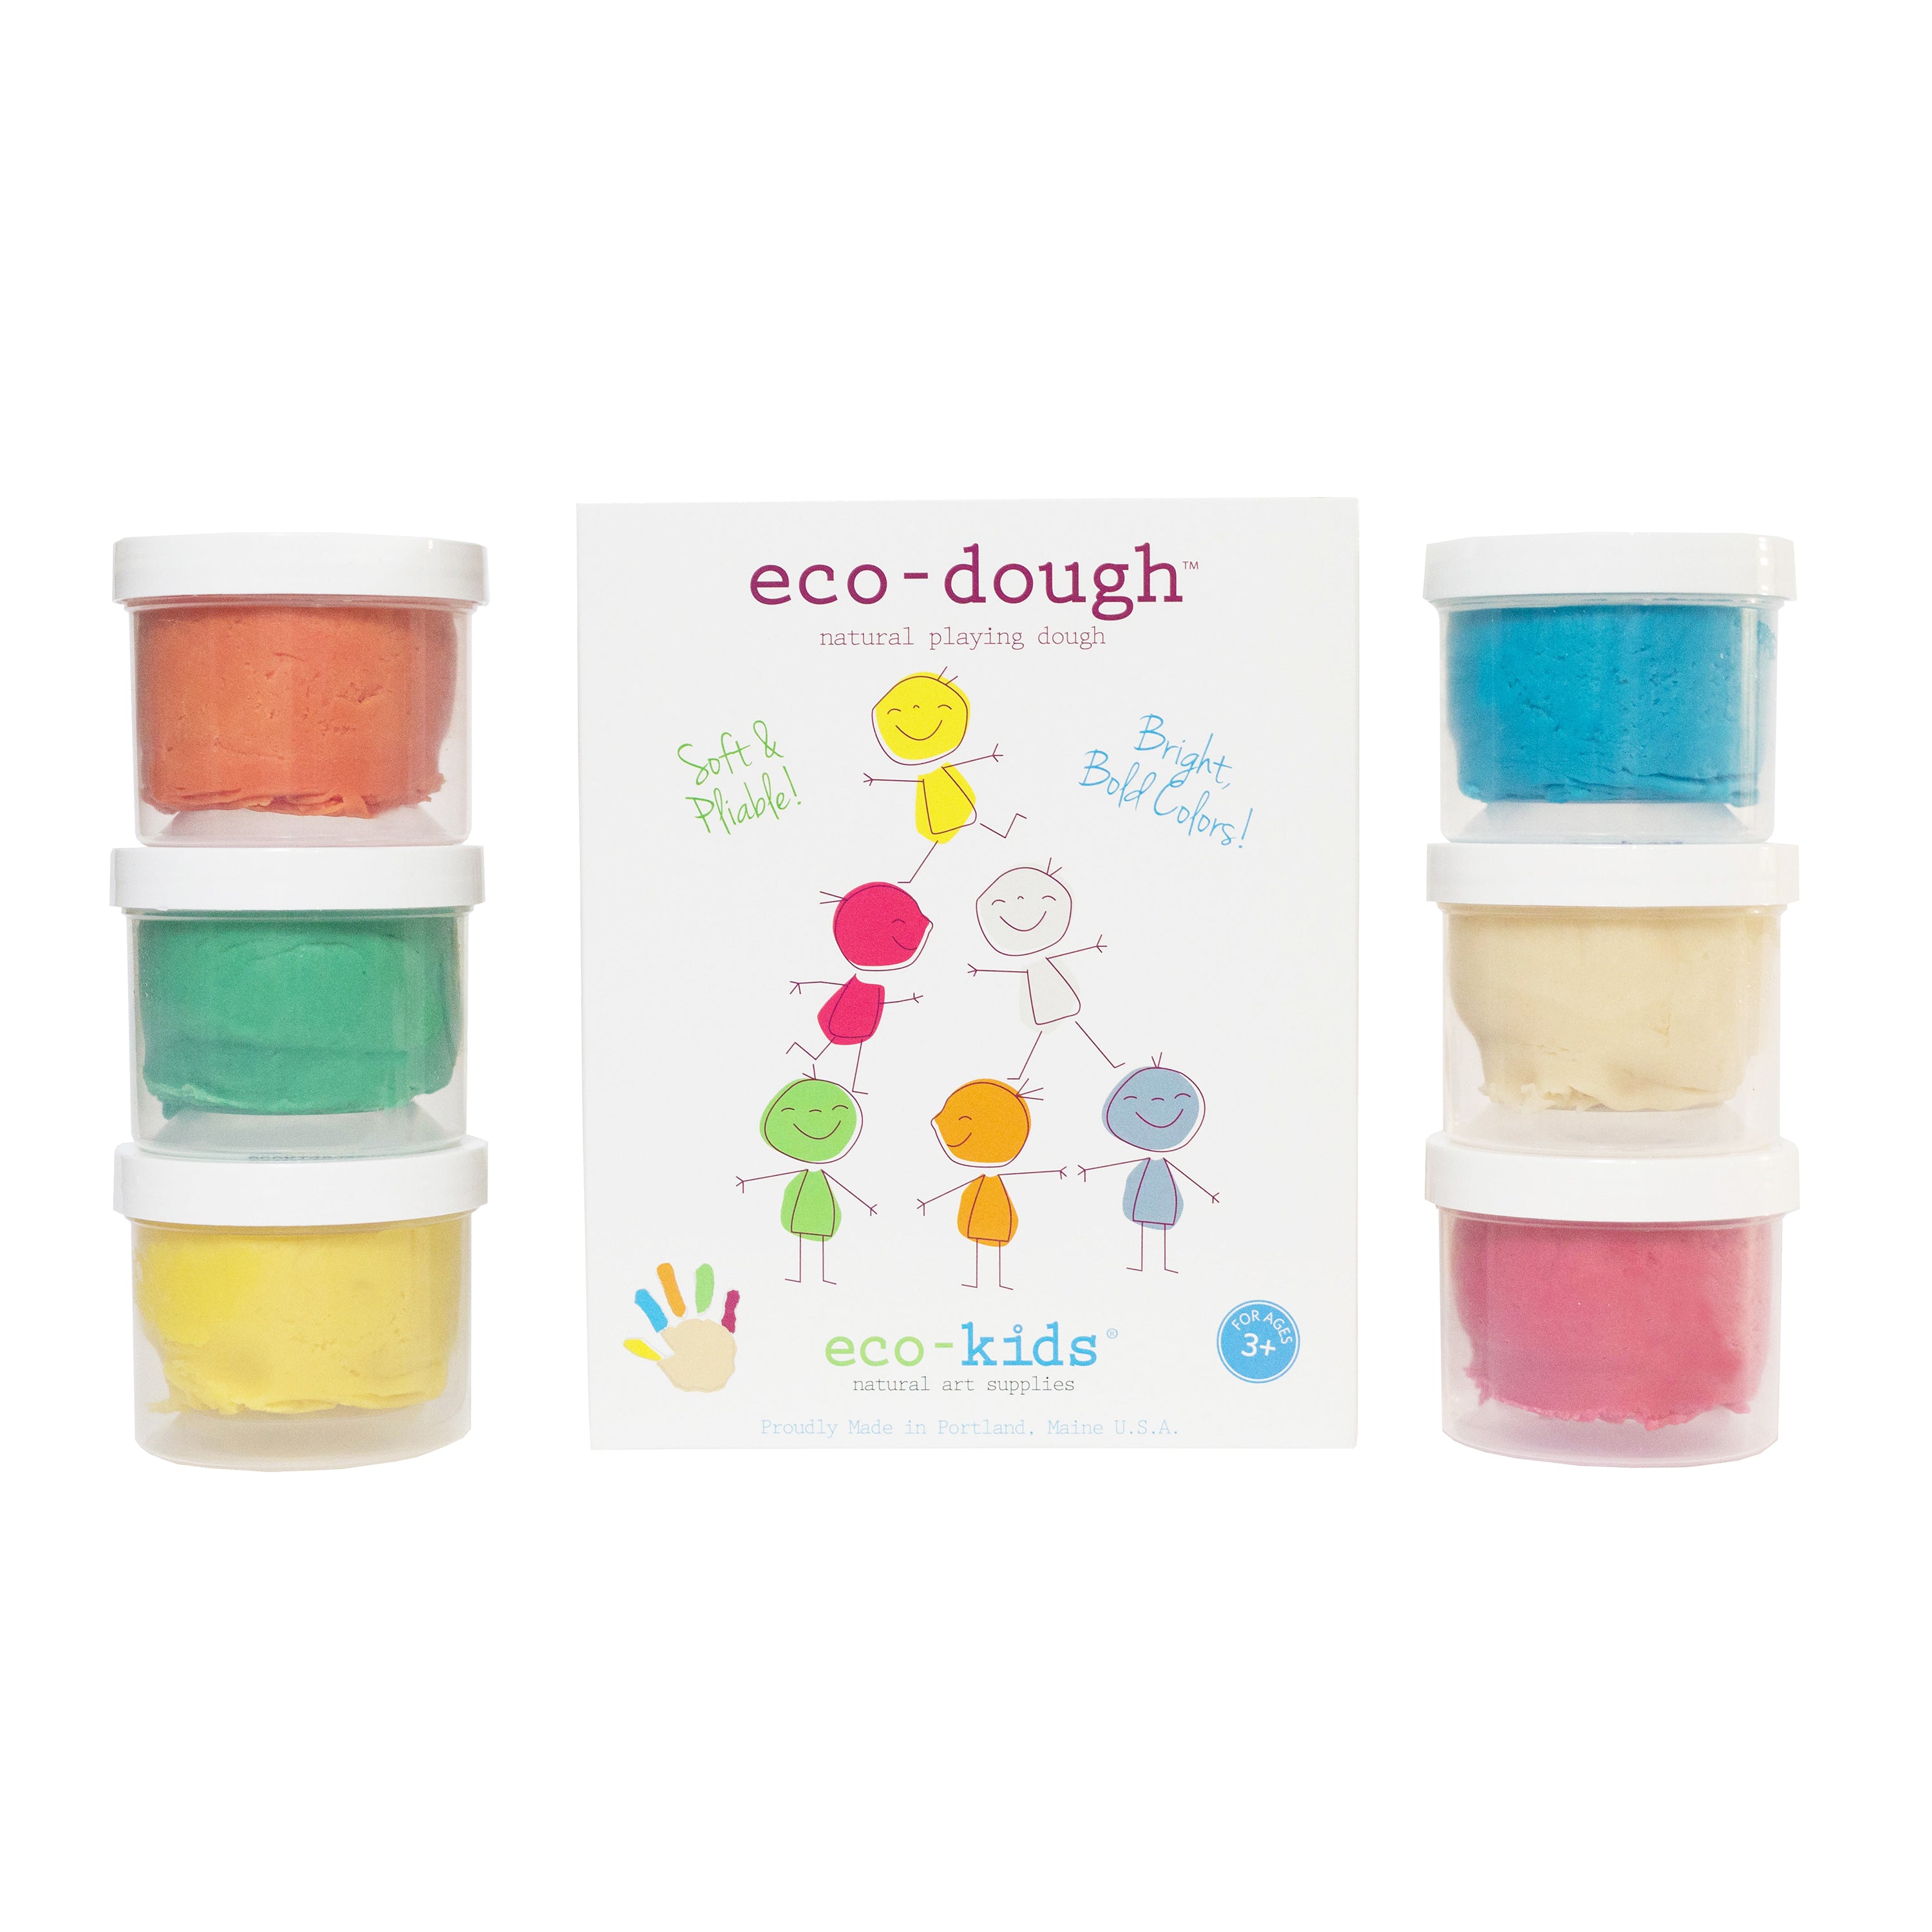 eco-dough 6 pack